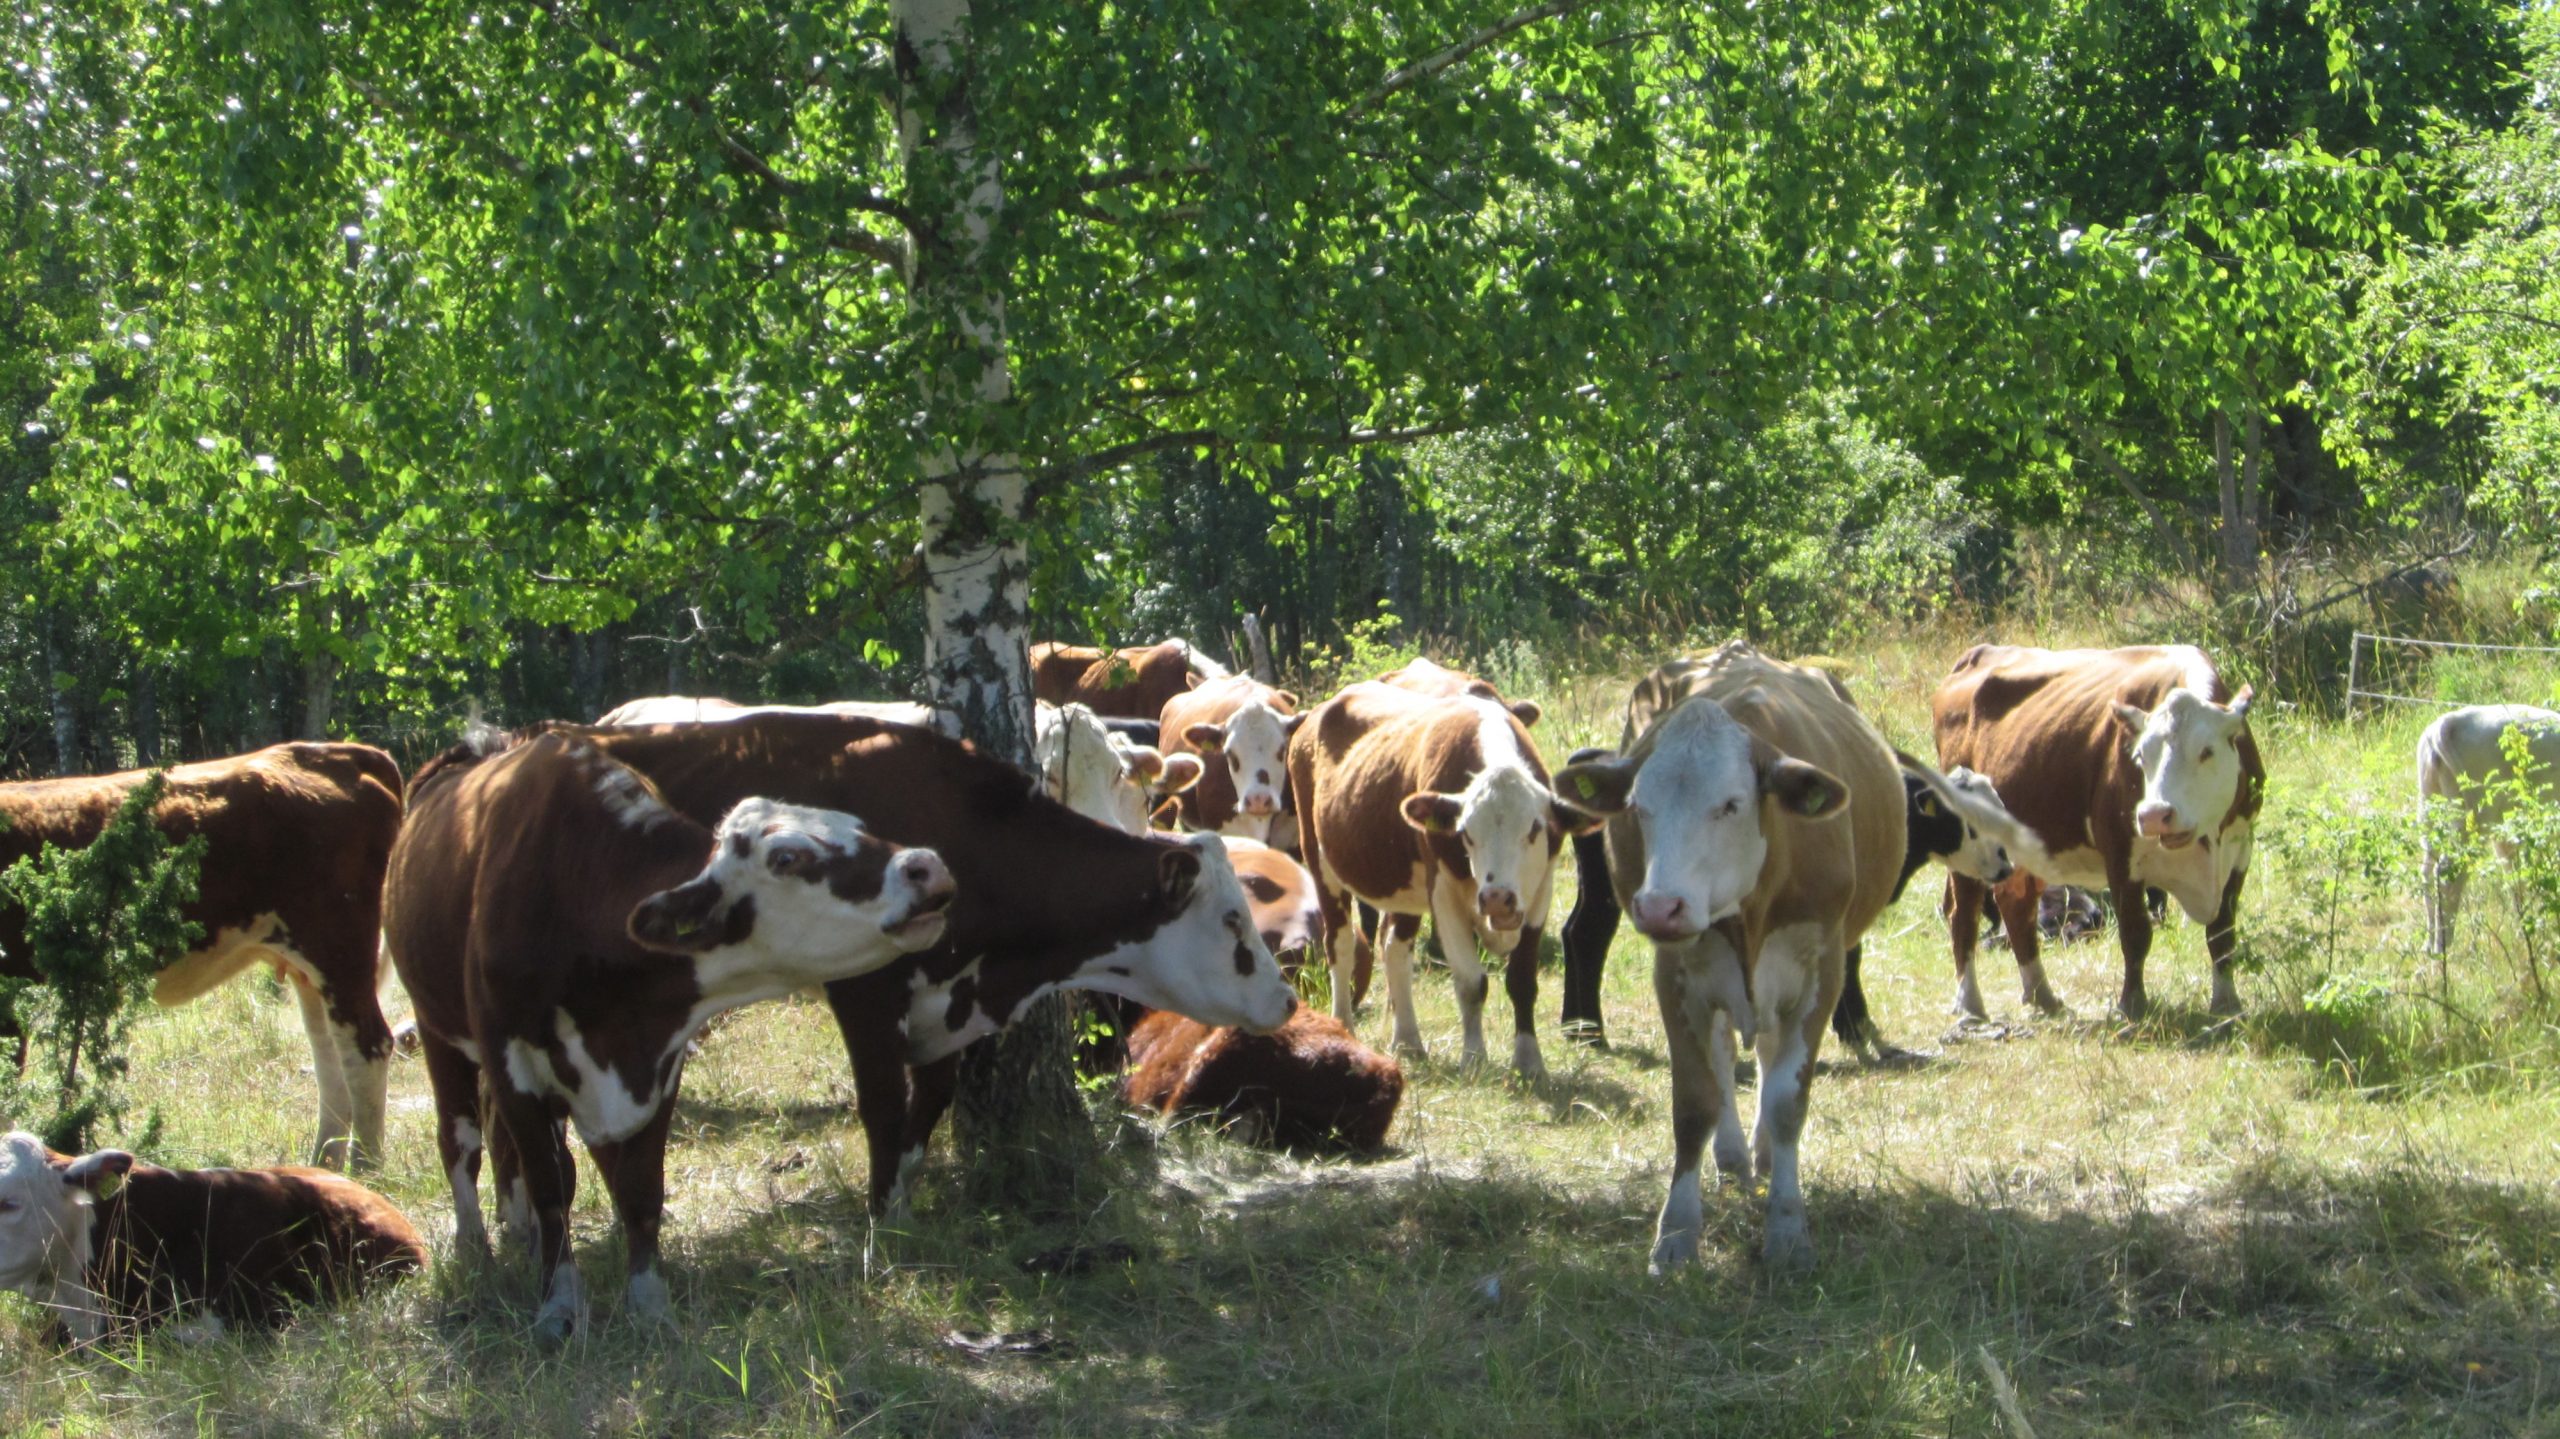 Kuvan keskellä on isohko koivu, jonka vihreiden lehvien alle ja ympärille on kokoontunut lehmälauma. Lehmät ovat väriltään ruskeita mutta naamat ovat valkoiset. Suurin osa seisoskelee, muutama on pistänyt makuulle ja yksi ammuu kameralle.